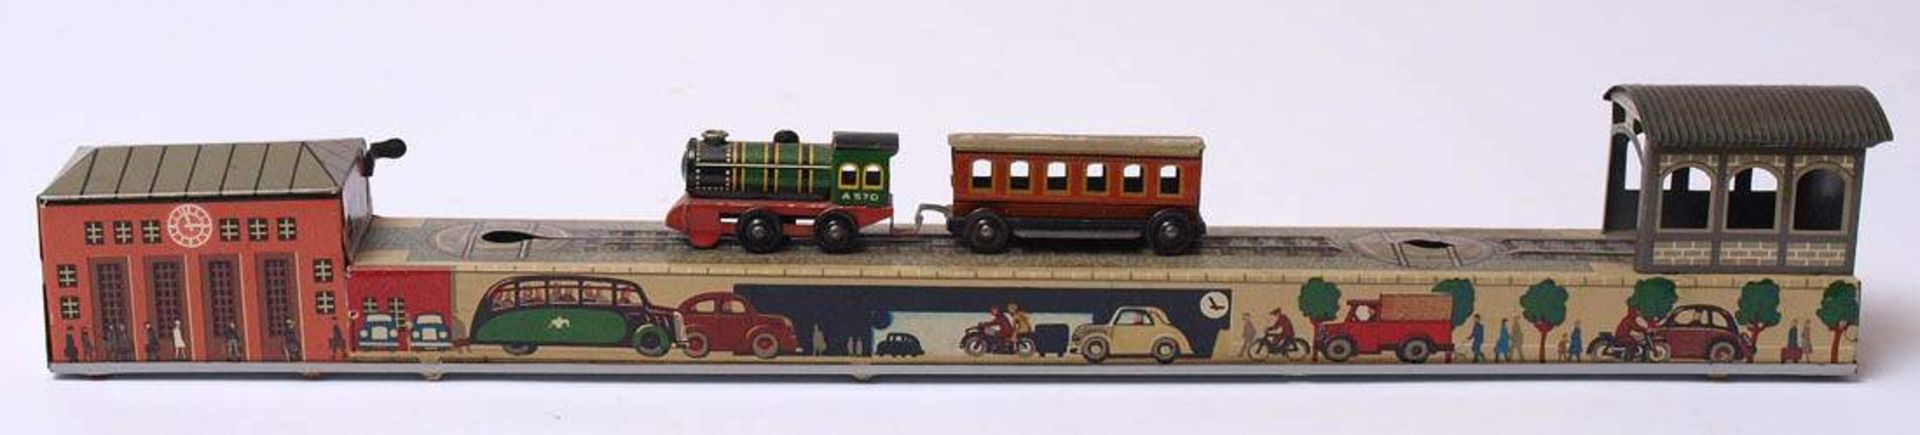 Rangierzug-Wendebahn, Arnold, 50er JahreBlech, farbig lithographiert. L.37,5cm. Uhrwerk intakt, - Bild 2 aus 3